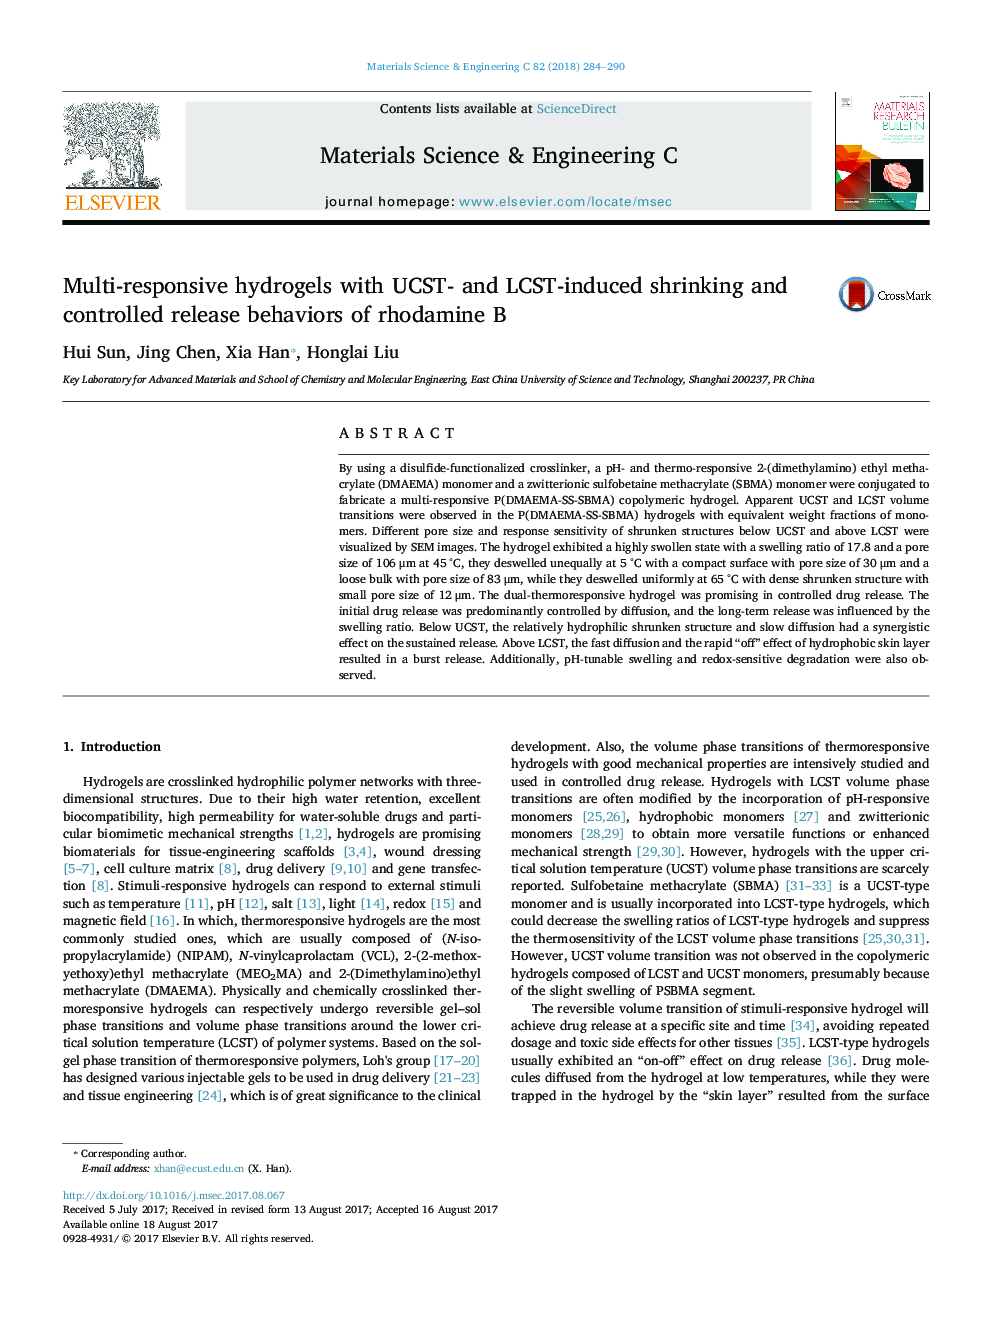 هیدروژل های واکنش پذیر چندگانه با UCST- و LCST-تحریک شده و کاهش رفتار و کنترل آزاد شدن رودامین B